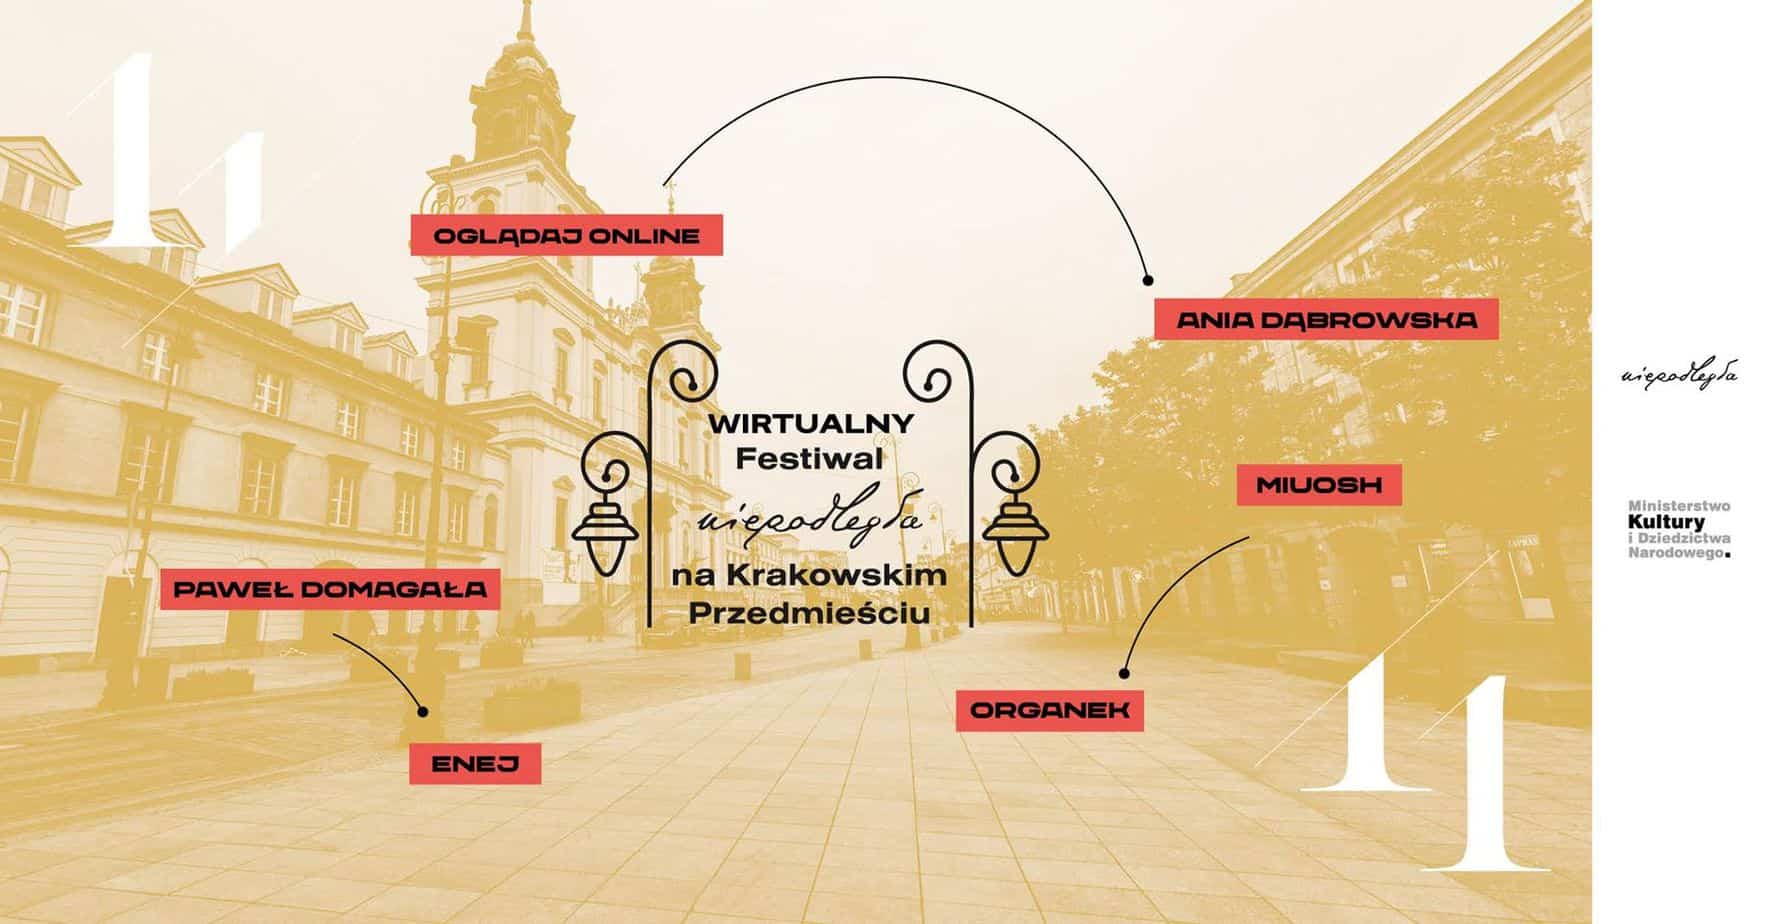 Wirtualny Festiwal Niepodległa na Krakowskim Przedmieściu już w środę!